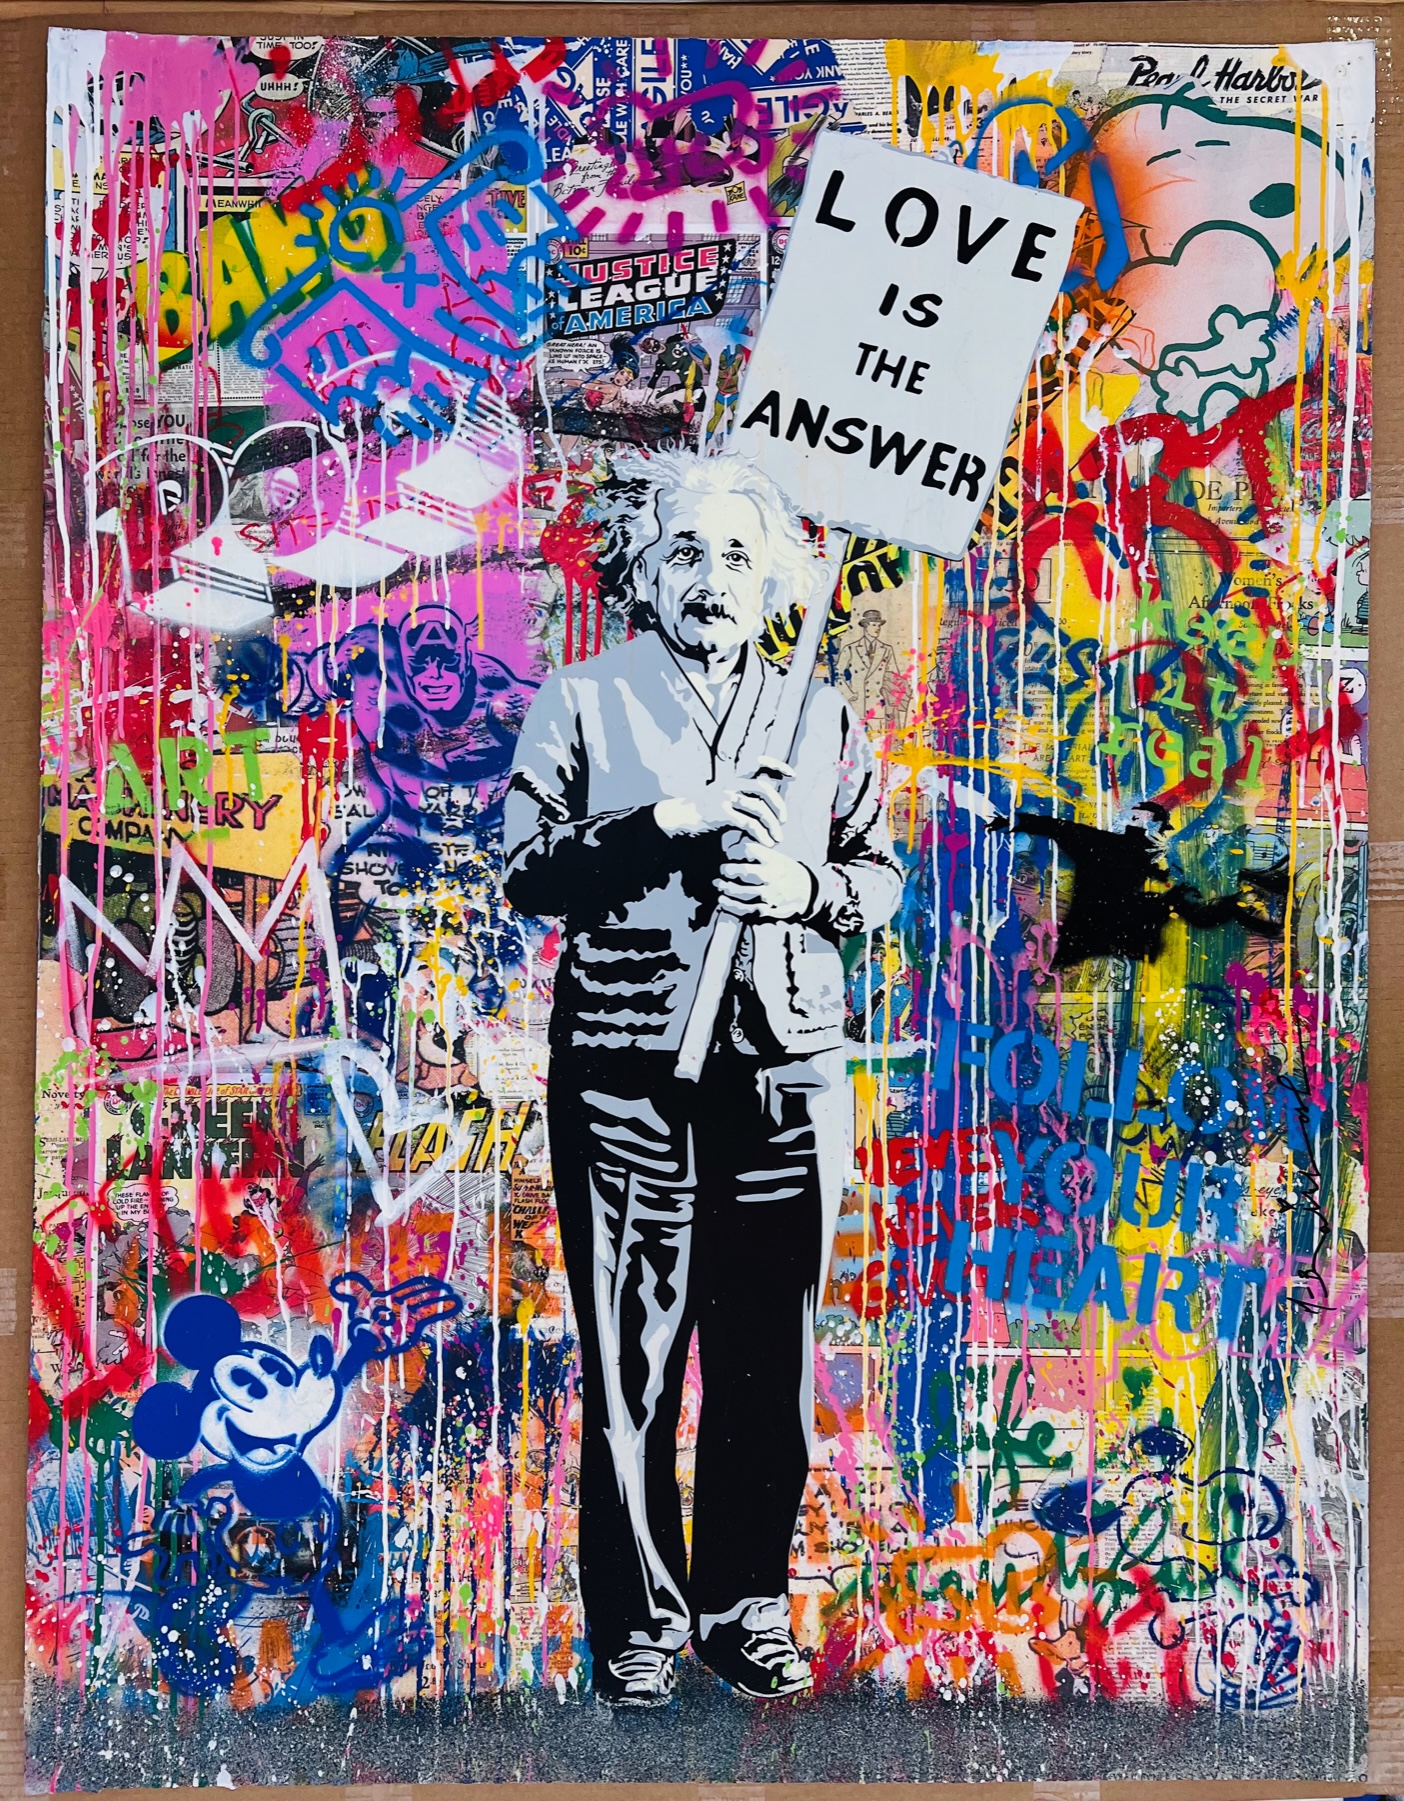 Mr. Brainwash - Einstein with Banksy Thrower